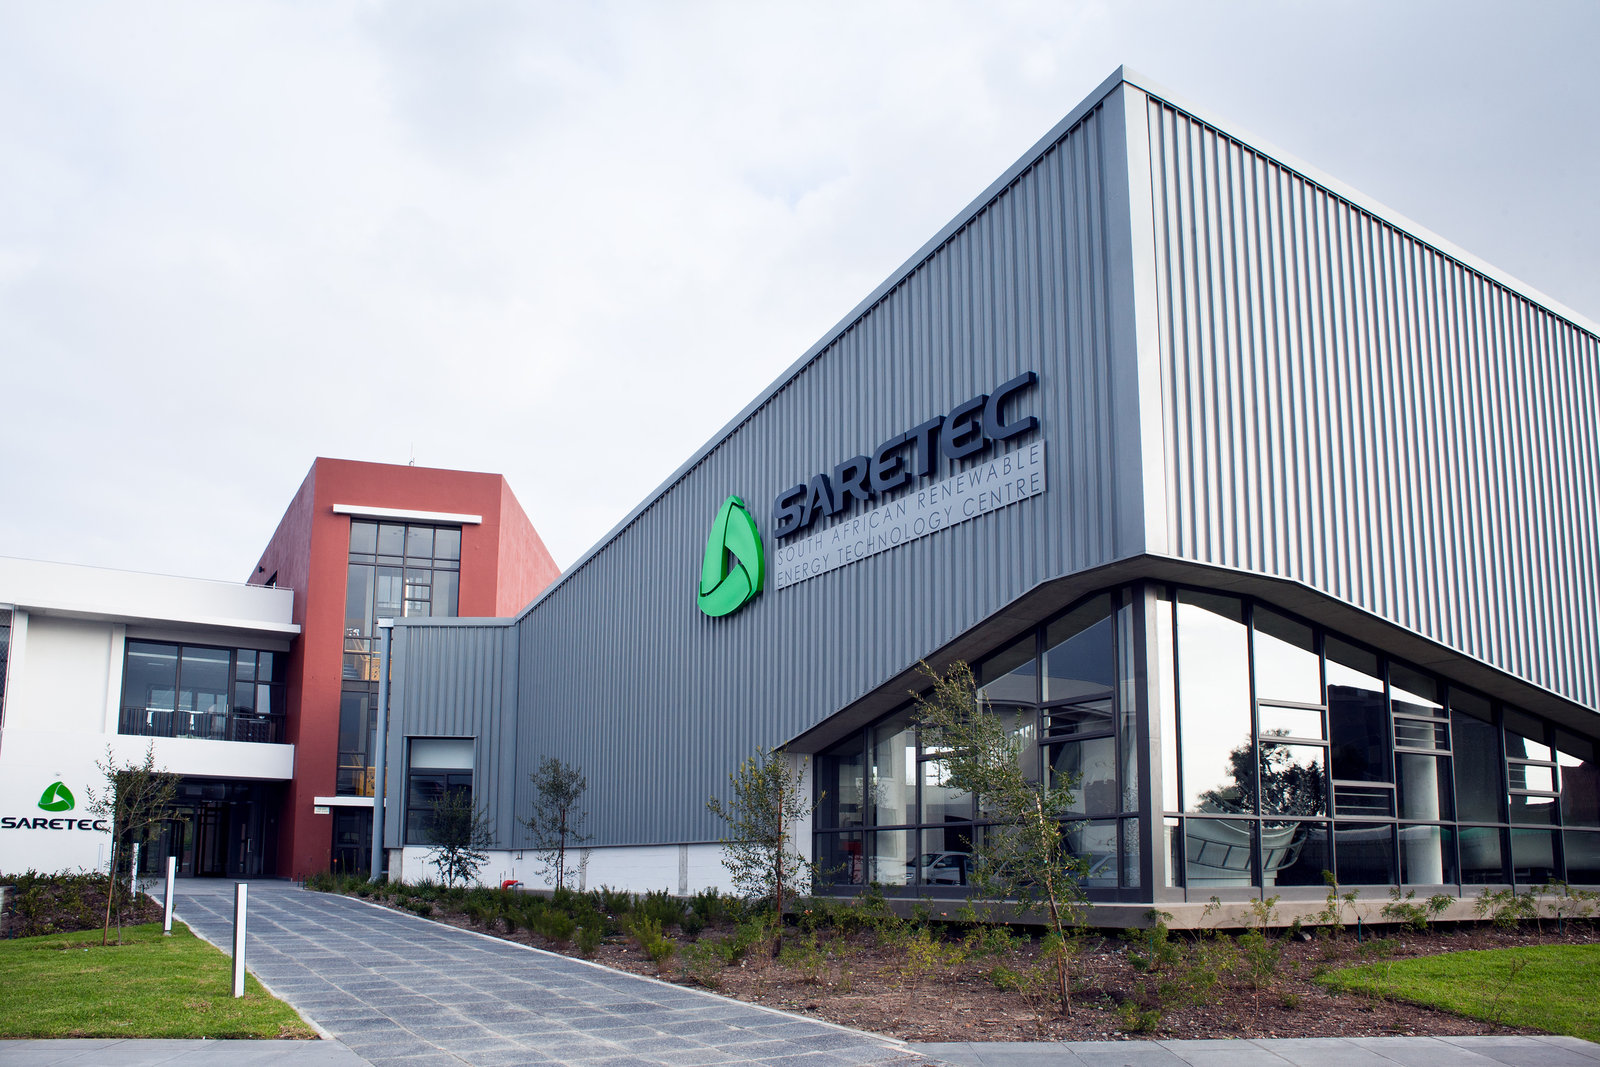 SARETEC training center